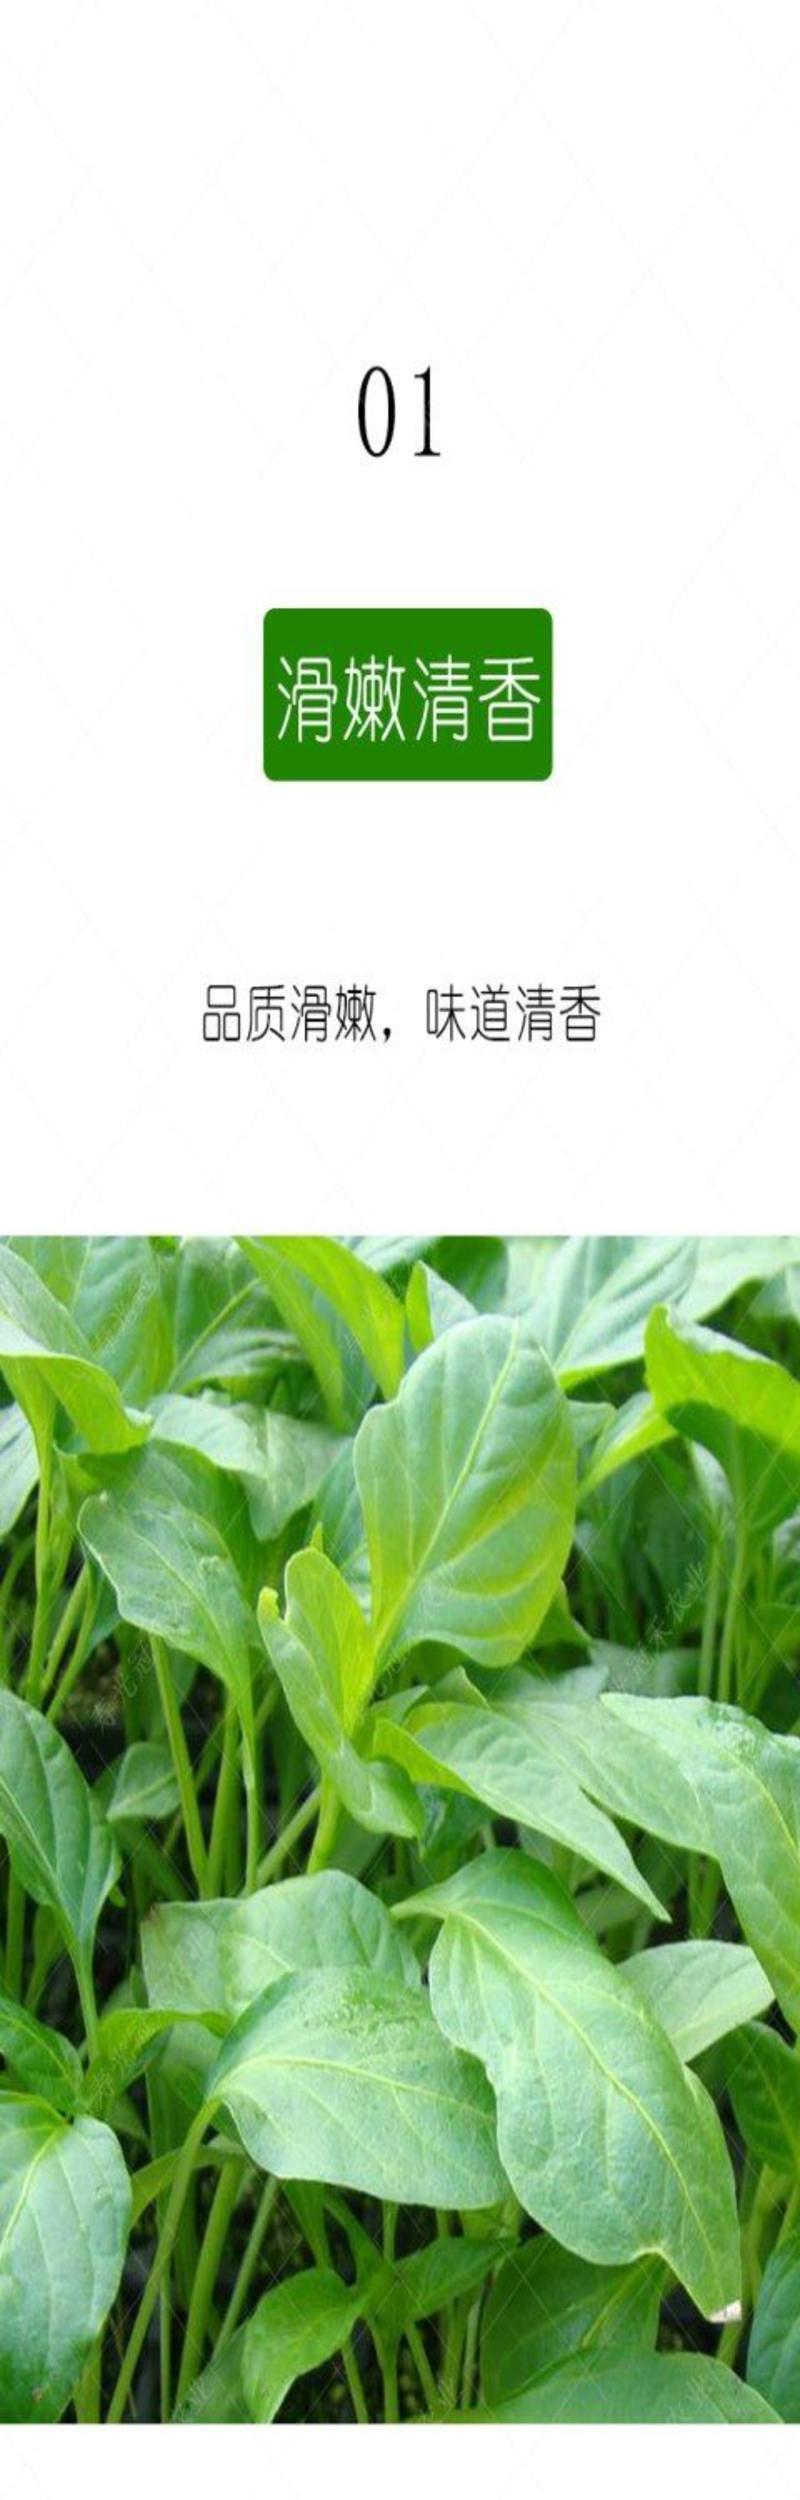 辣椒叶种子专吃叶子的辣椒阳台四季盆栽特色蔬菜高产抗病包邮